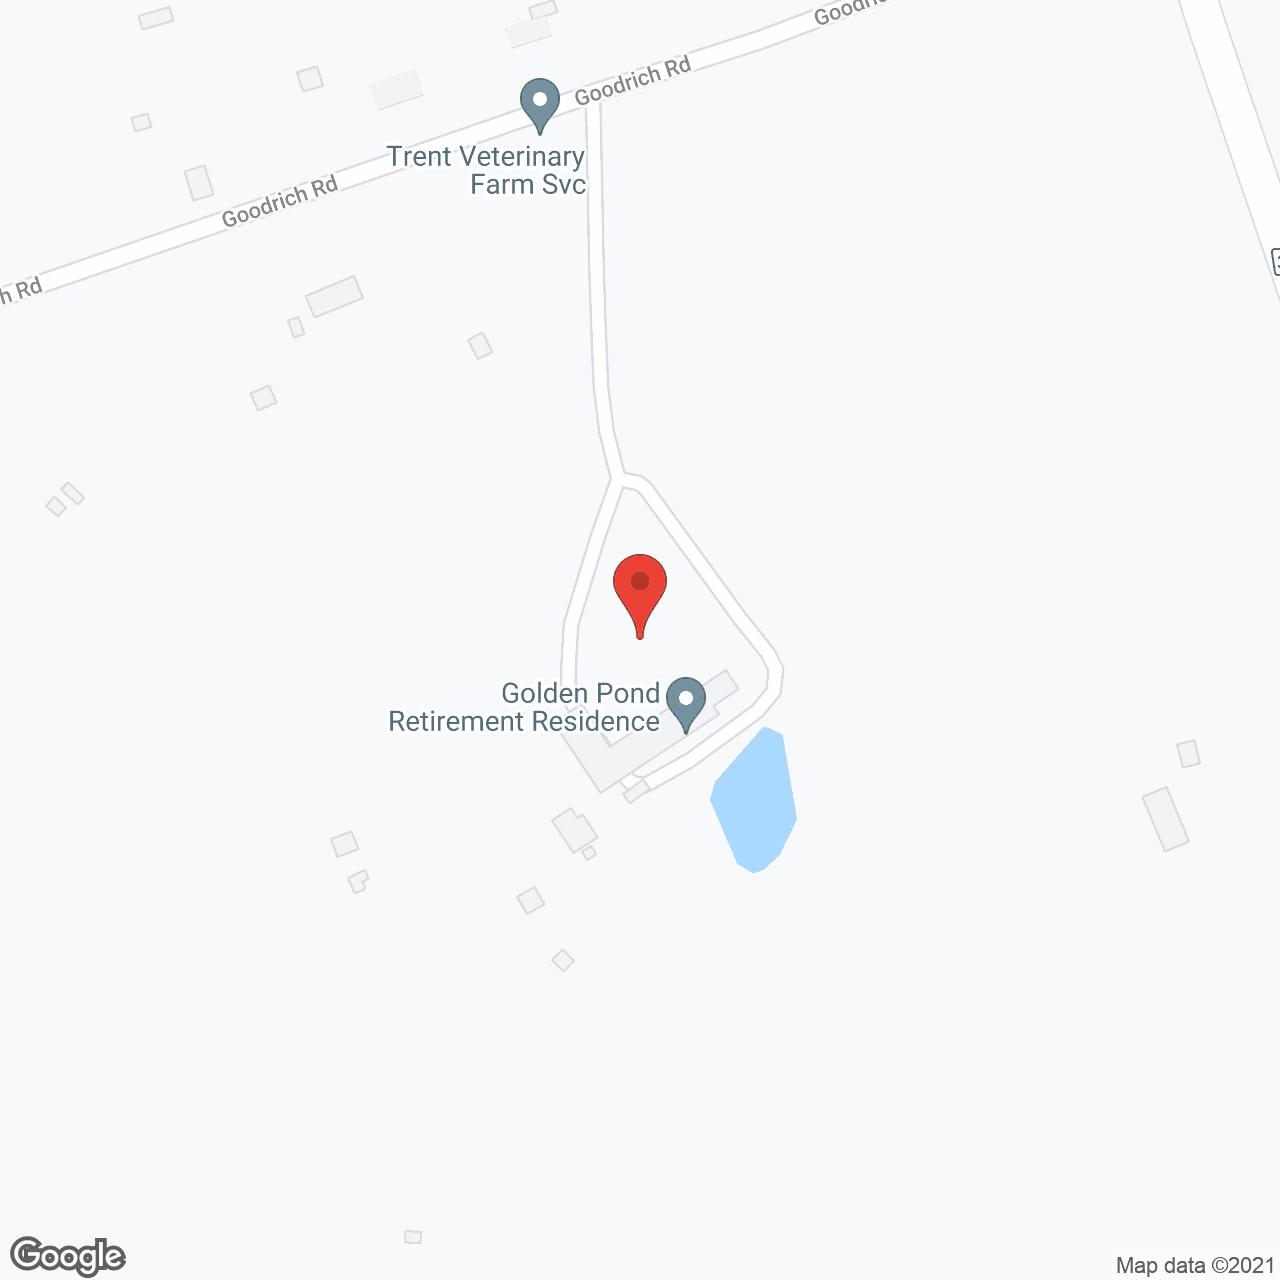 Golden Pond Retirement Residence in google map